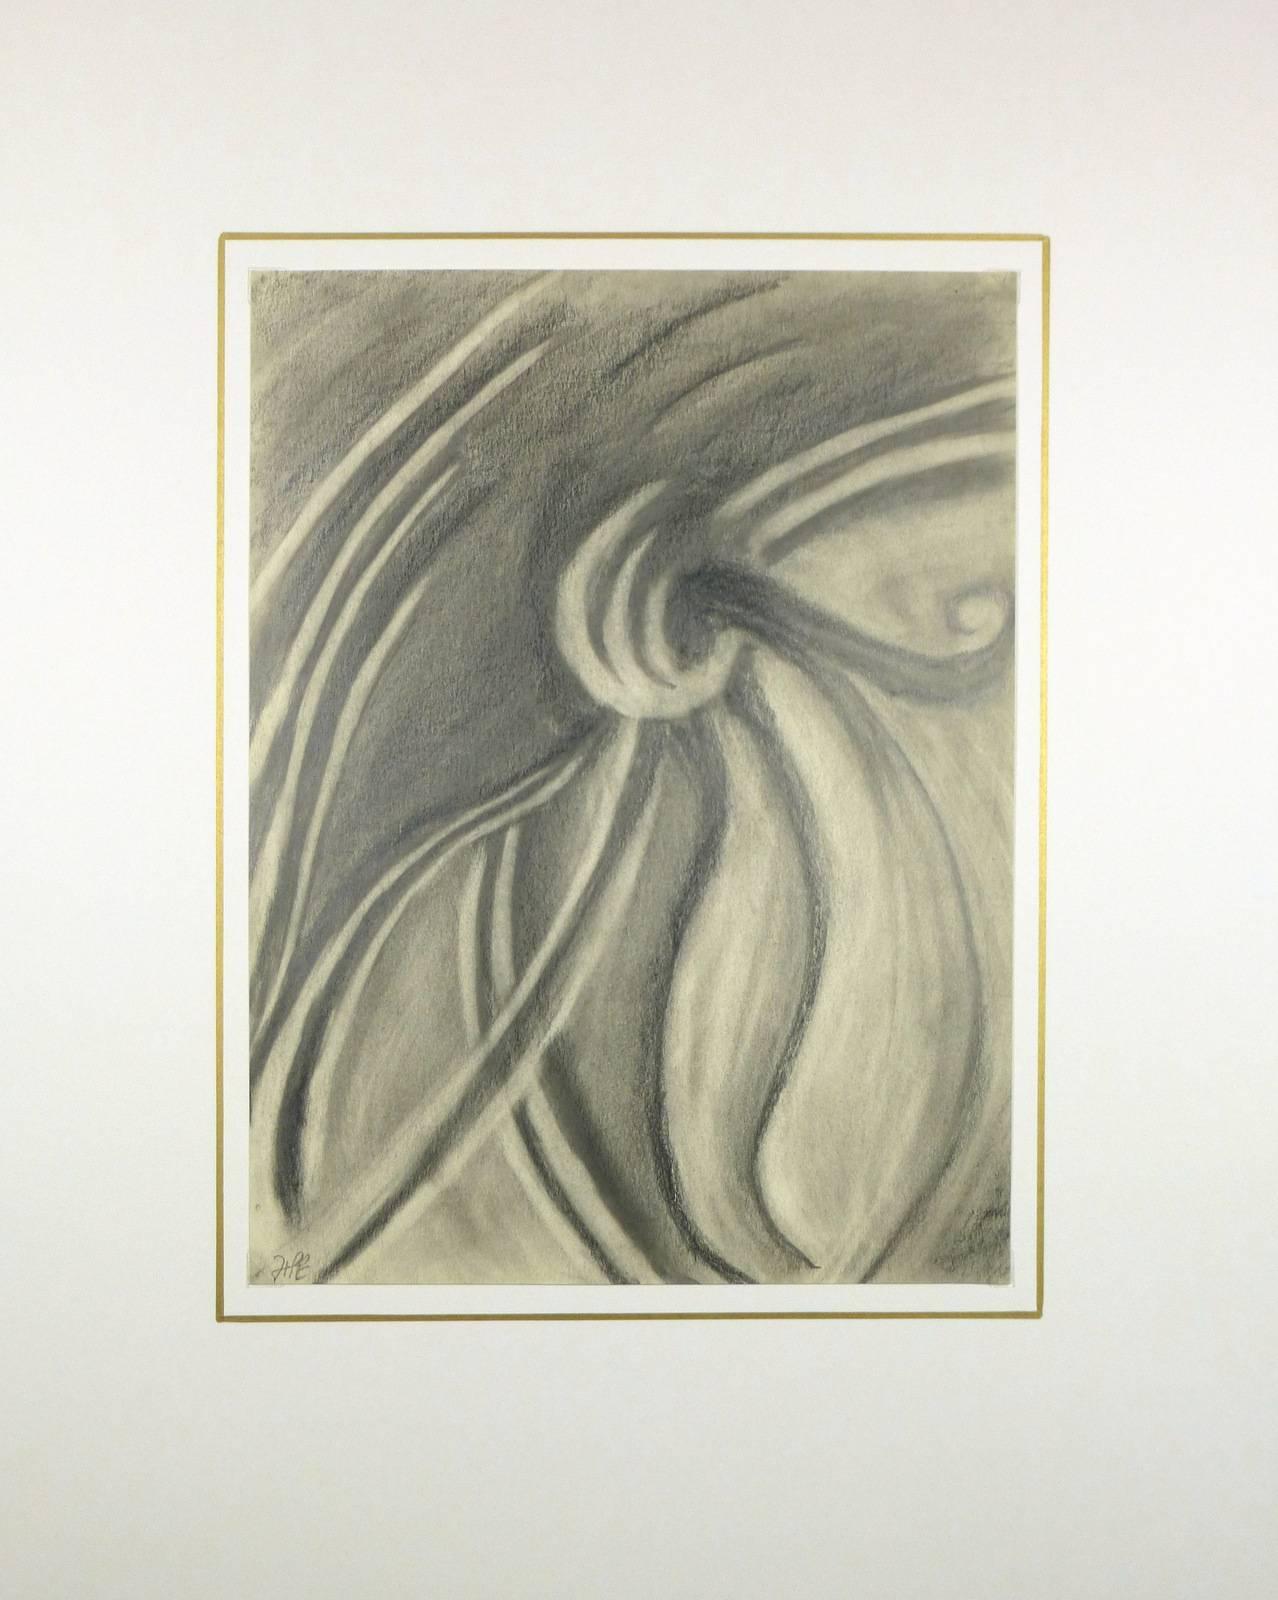 Abstrakte Bleistiftzeichnung mit kühnen Linien des spanischen Künstlers Hugo Esteban, um 1960. Signiert unten links.  

Originalkunstwerk auf Papier auf einem weißen Passepartout mit Goldrand. Die Matte passt in einen Rahmen mit Standardgröße.